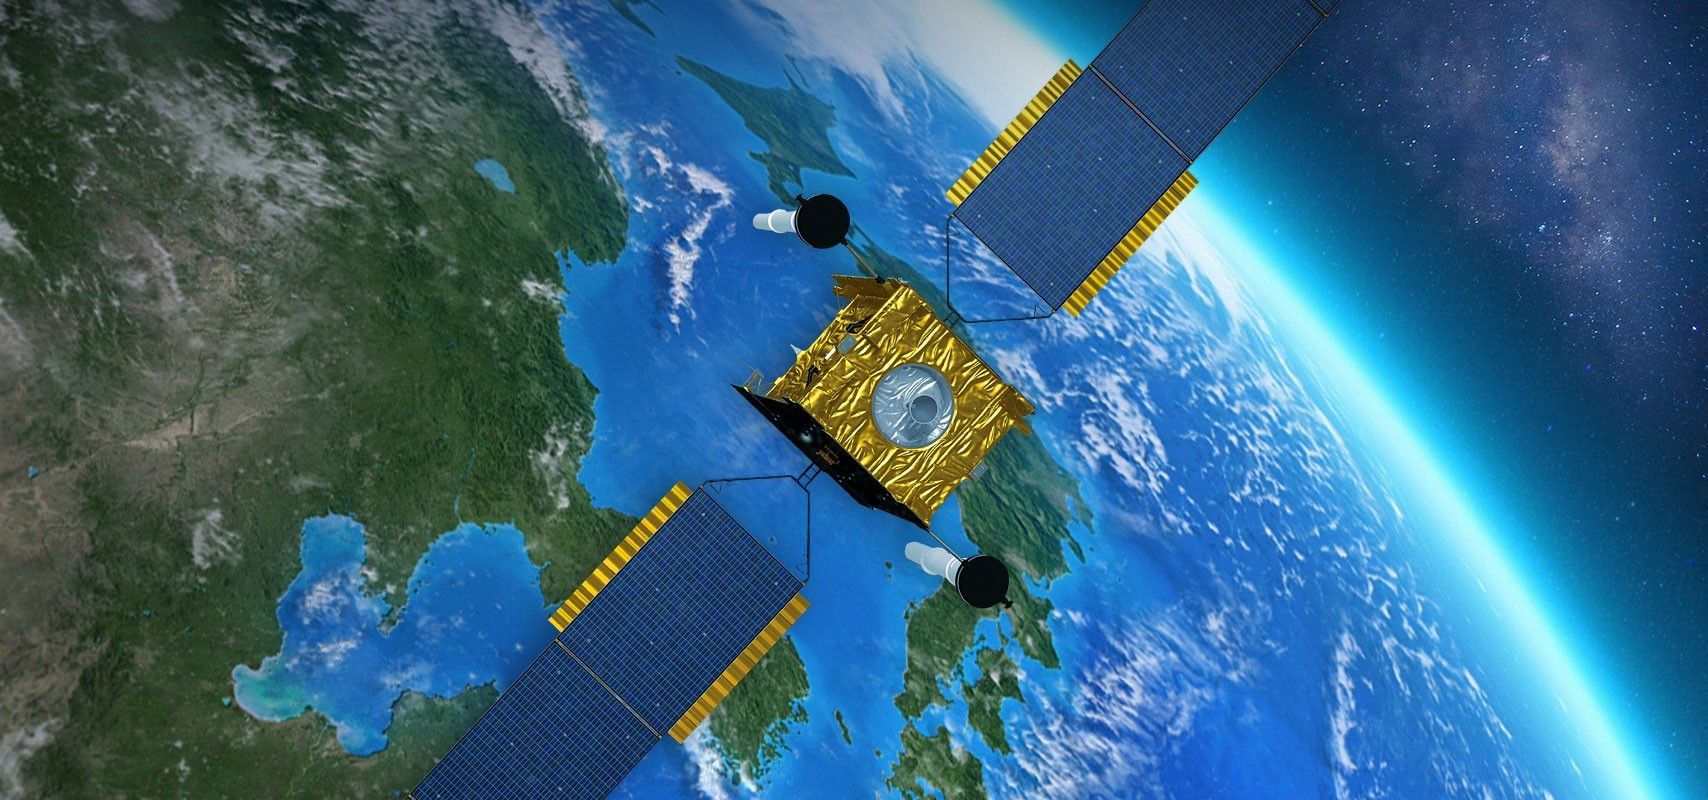 Artystyczna wizja satelity Skynet 5. Ilustracja: Airbus Defence & Space